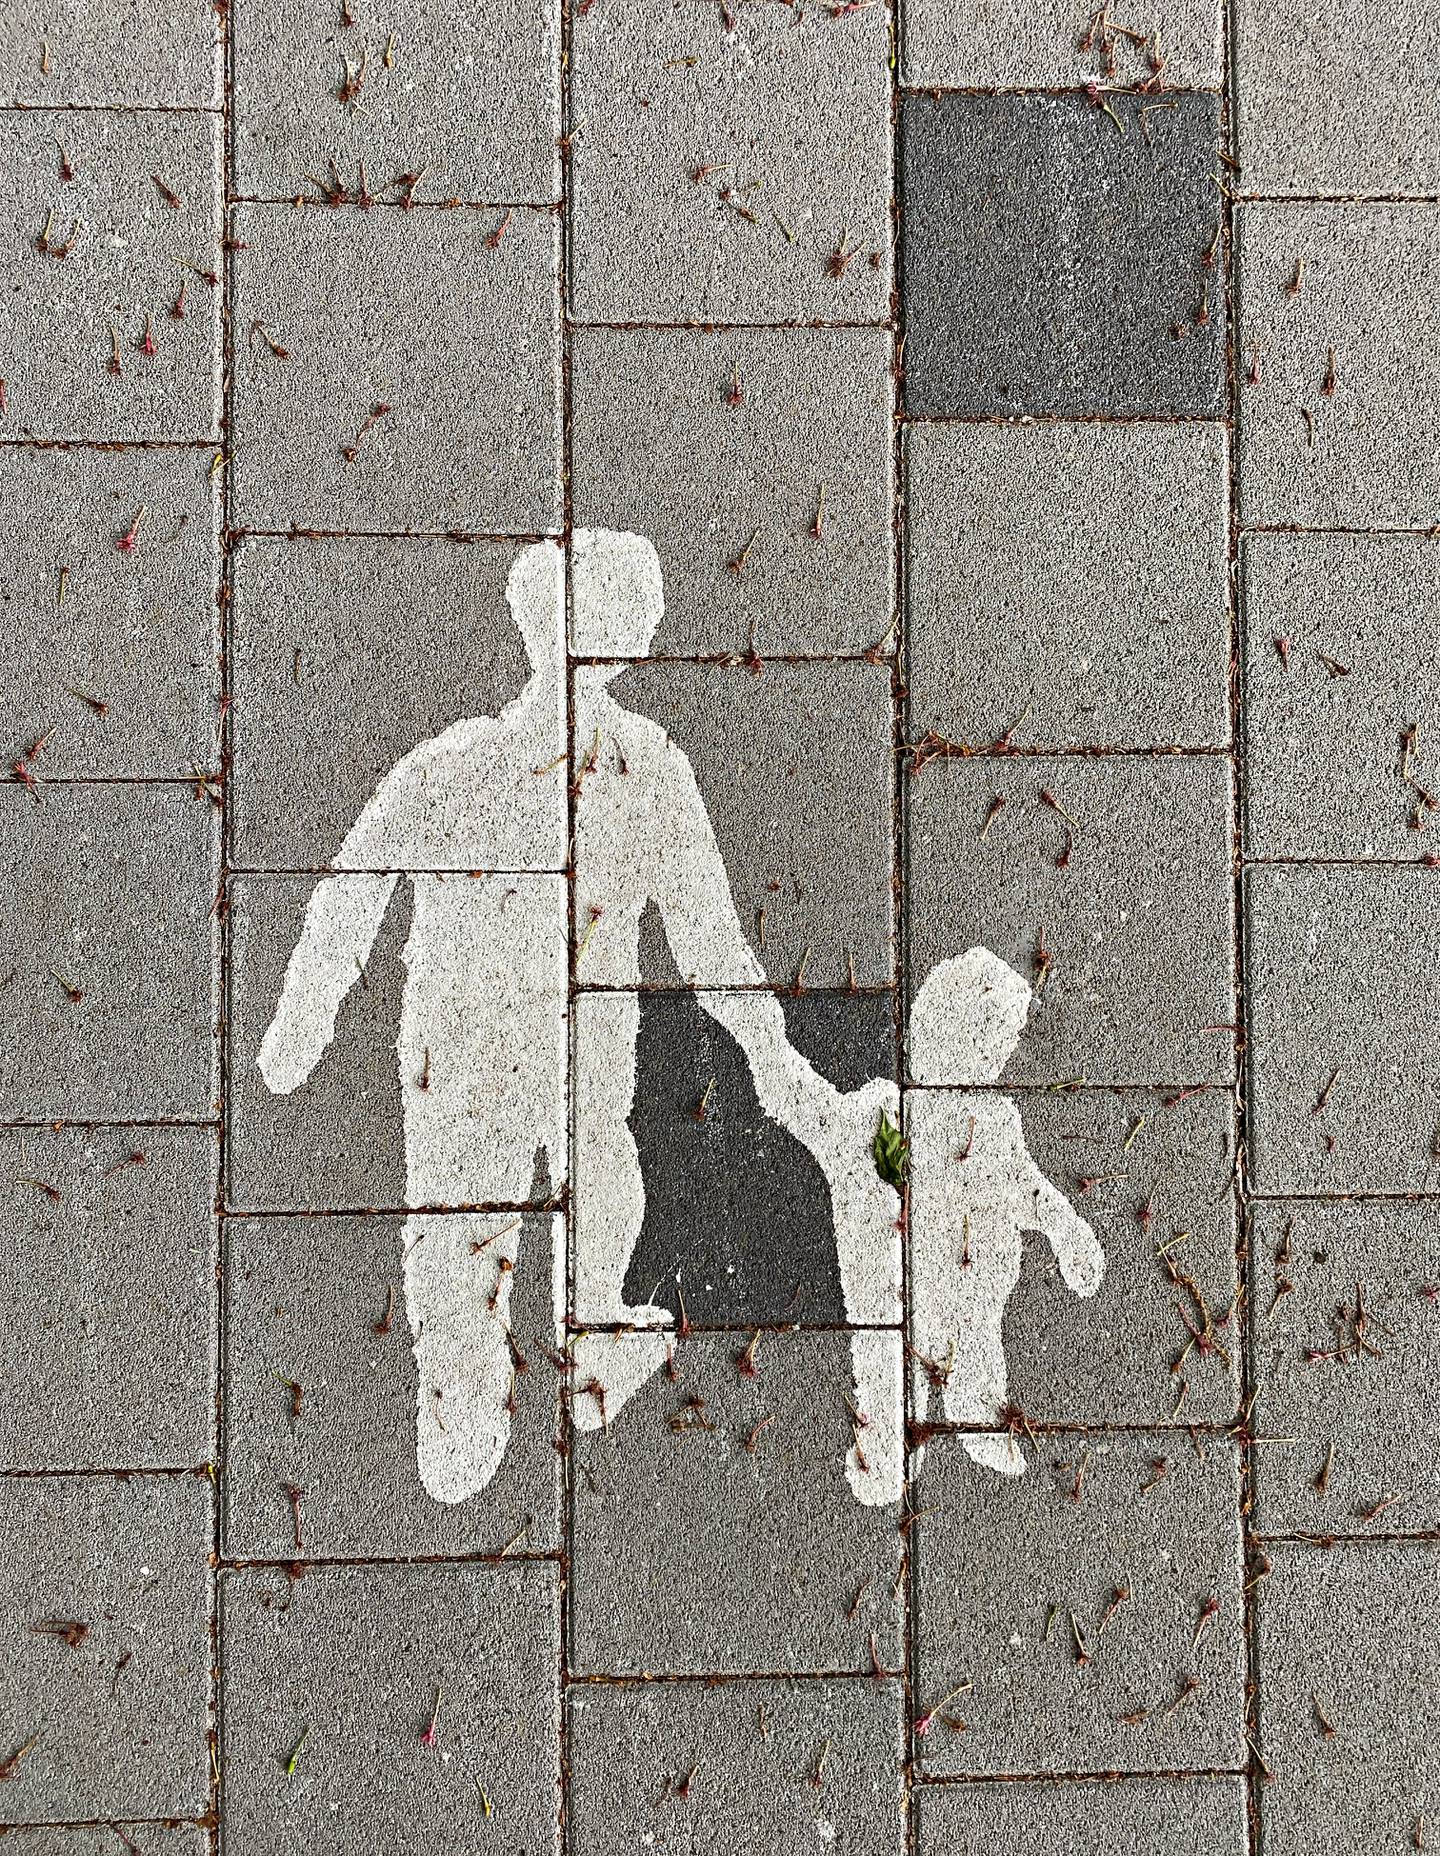 Målning på vägbanan, vuxen håller ett barn i handen.